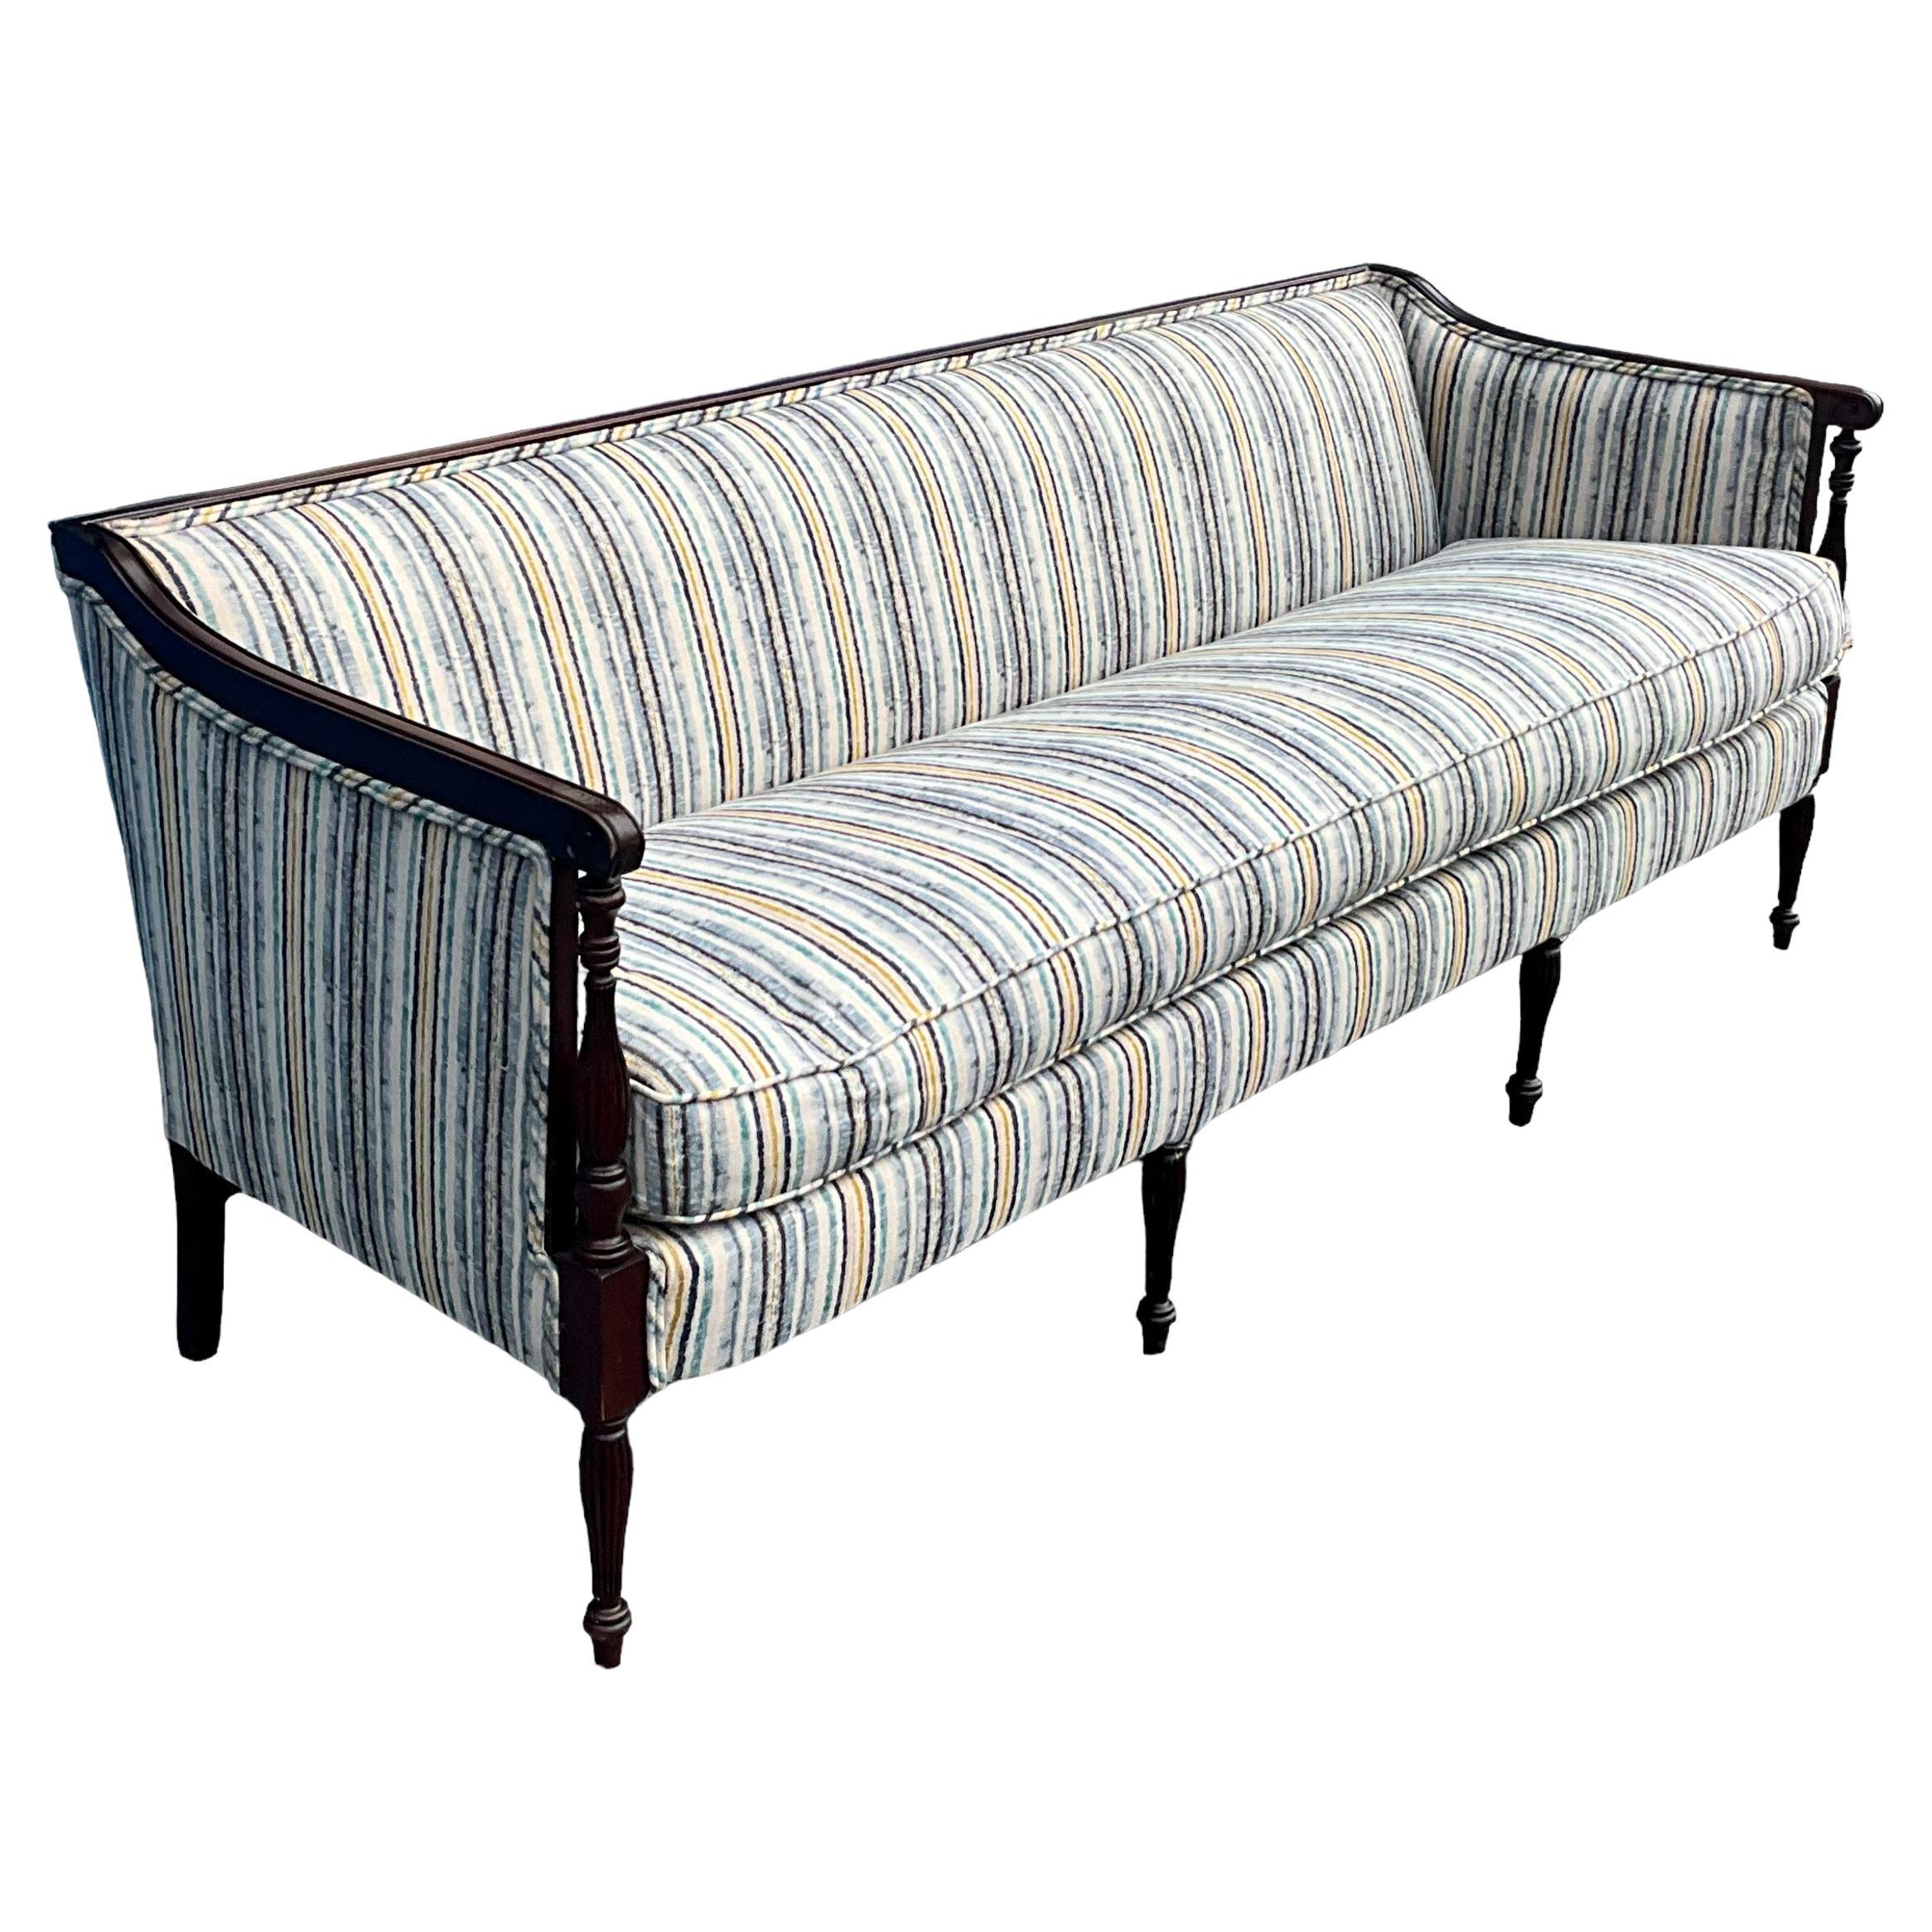 Dies ist ein Vintage Federal oder Sheraton-Stil geschnitzt Mahagoni-Sofa zugeschrieben Hickory White Furniture. Beachten Sie die konisch zulaufenden Beine und Armstützen.   Die Polsterung besteht aus einem Baumwoll-Leinen-Gemisch mit einem dicken